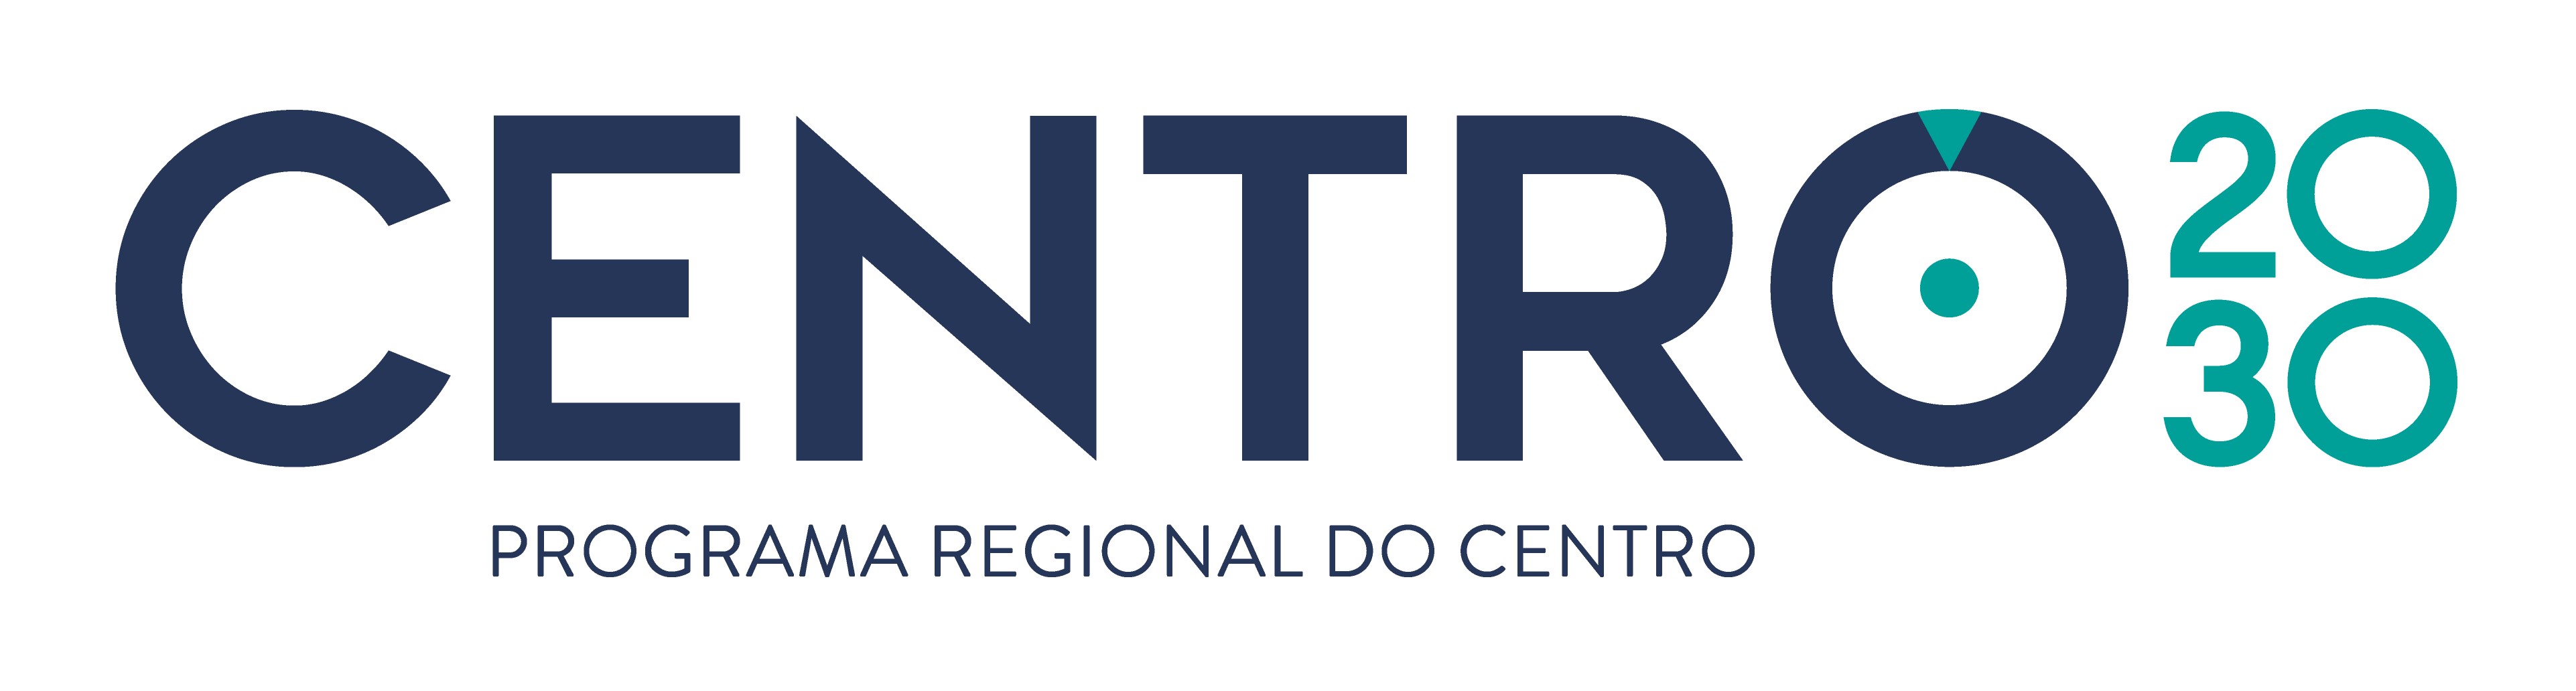 Logo Centro2030 01